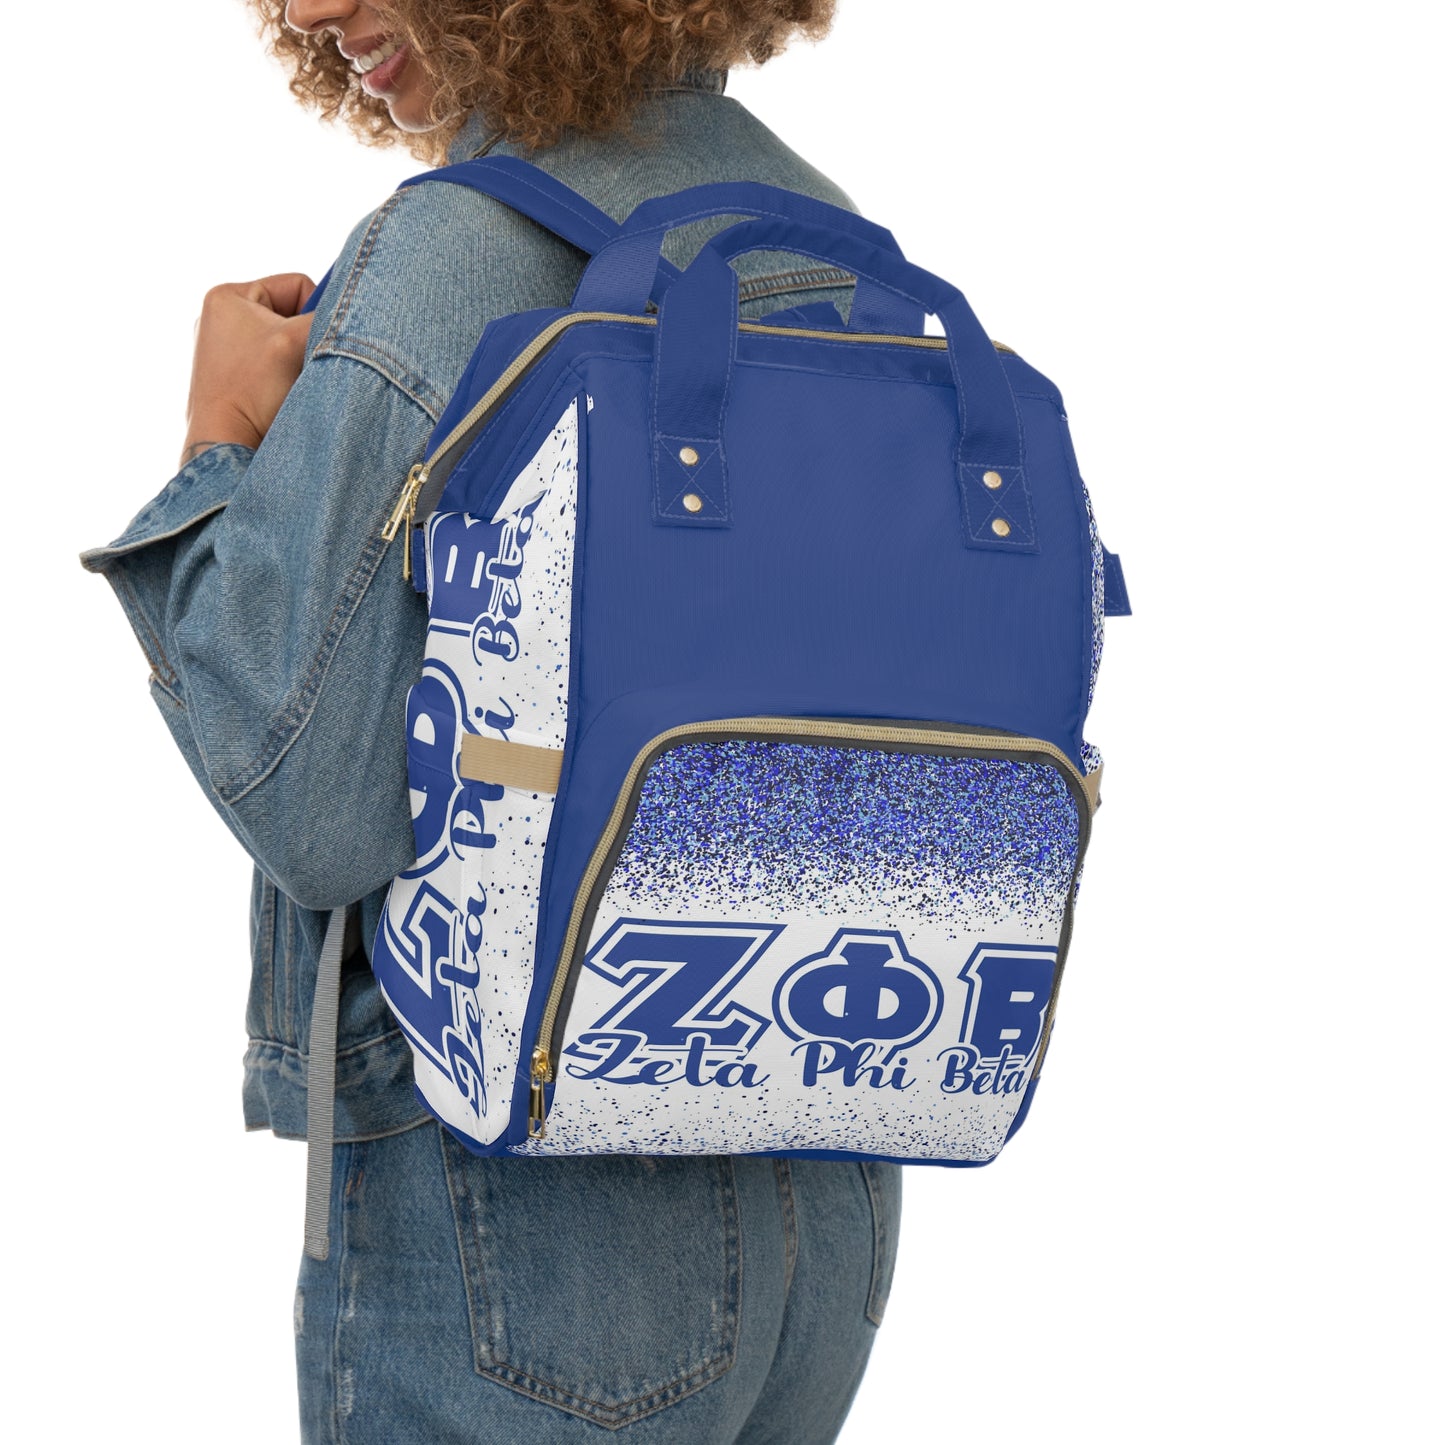 Zeta Phi Beta Multifunctional Backpack